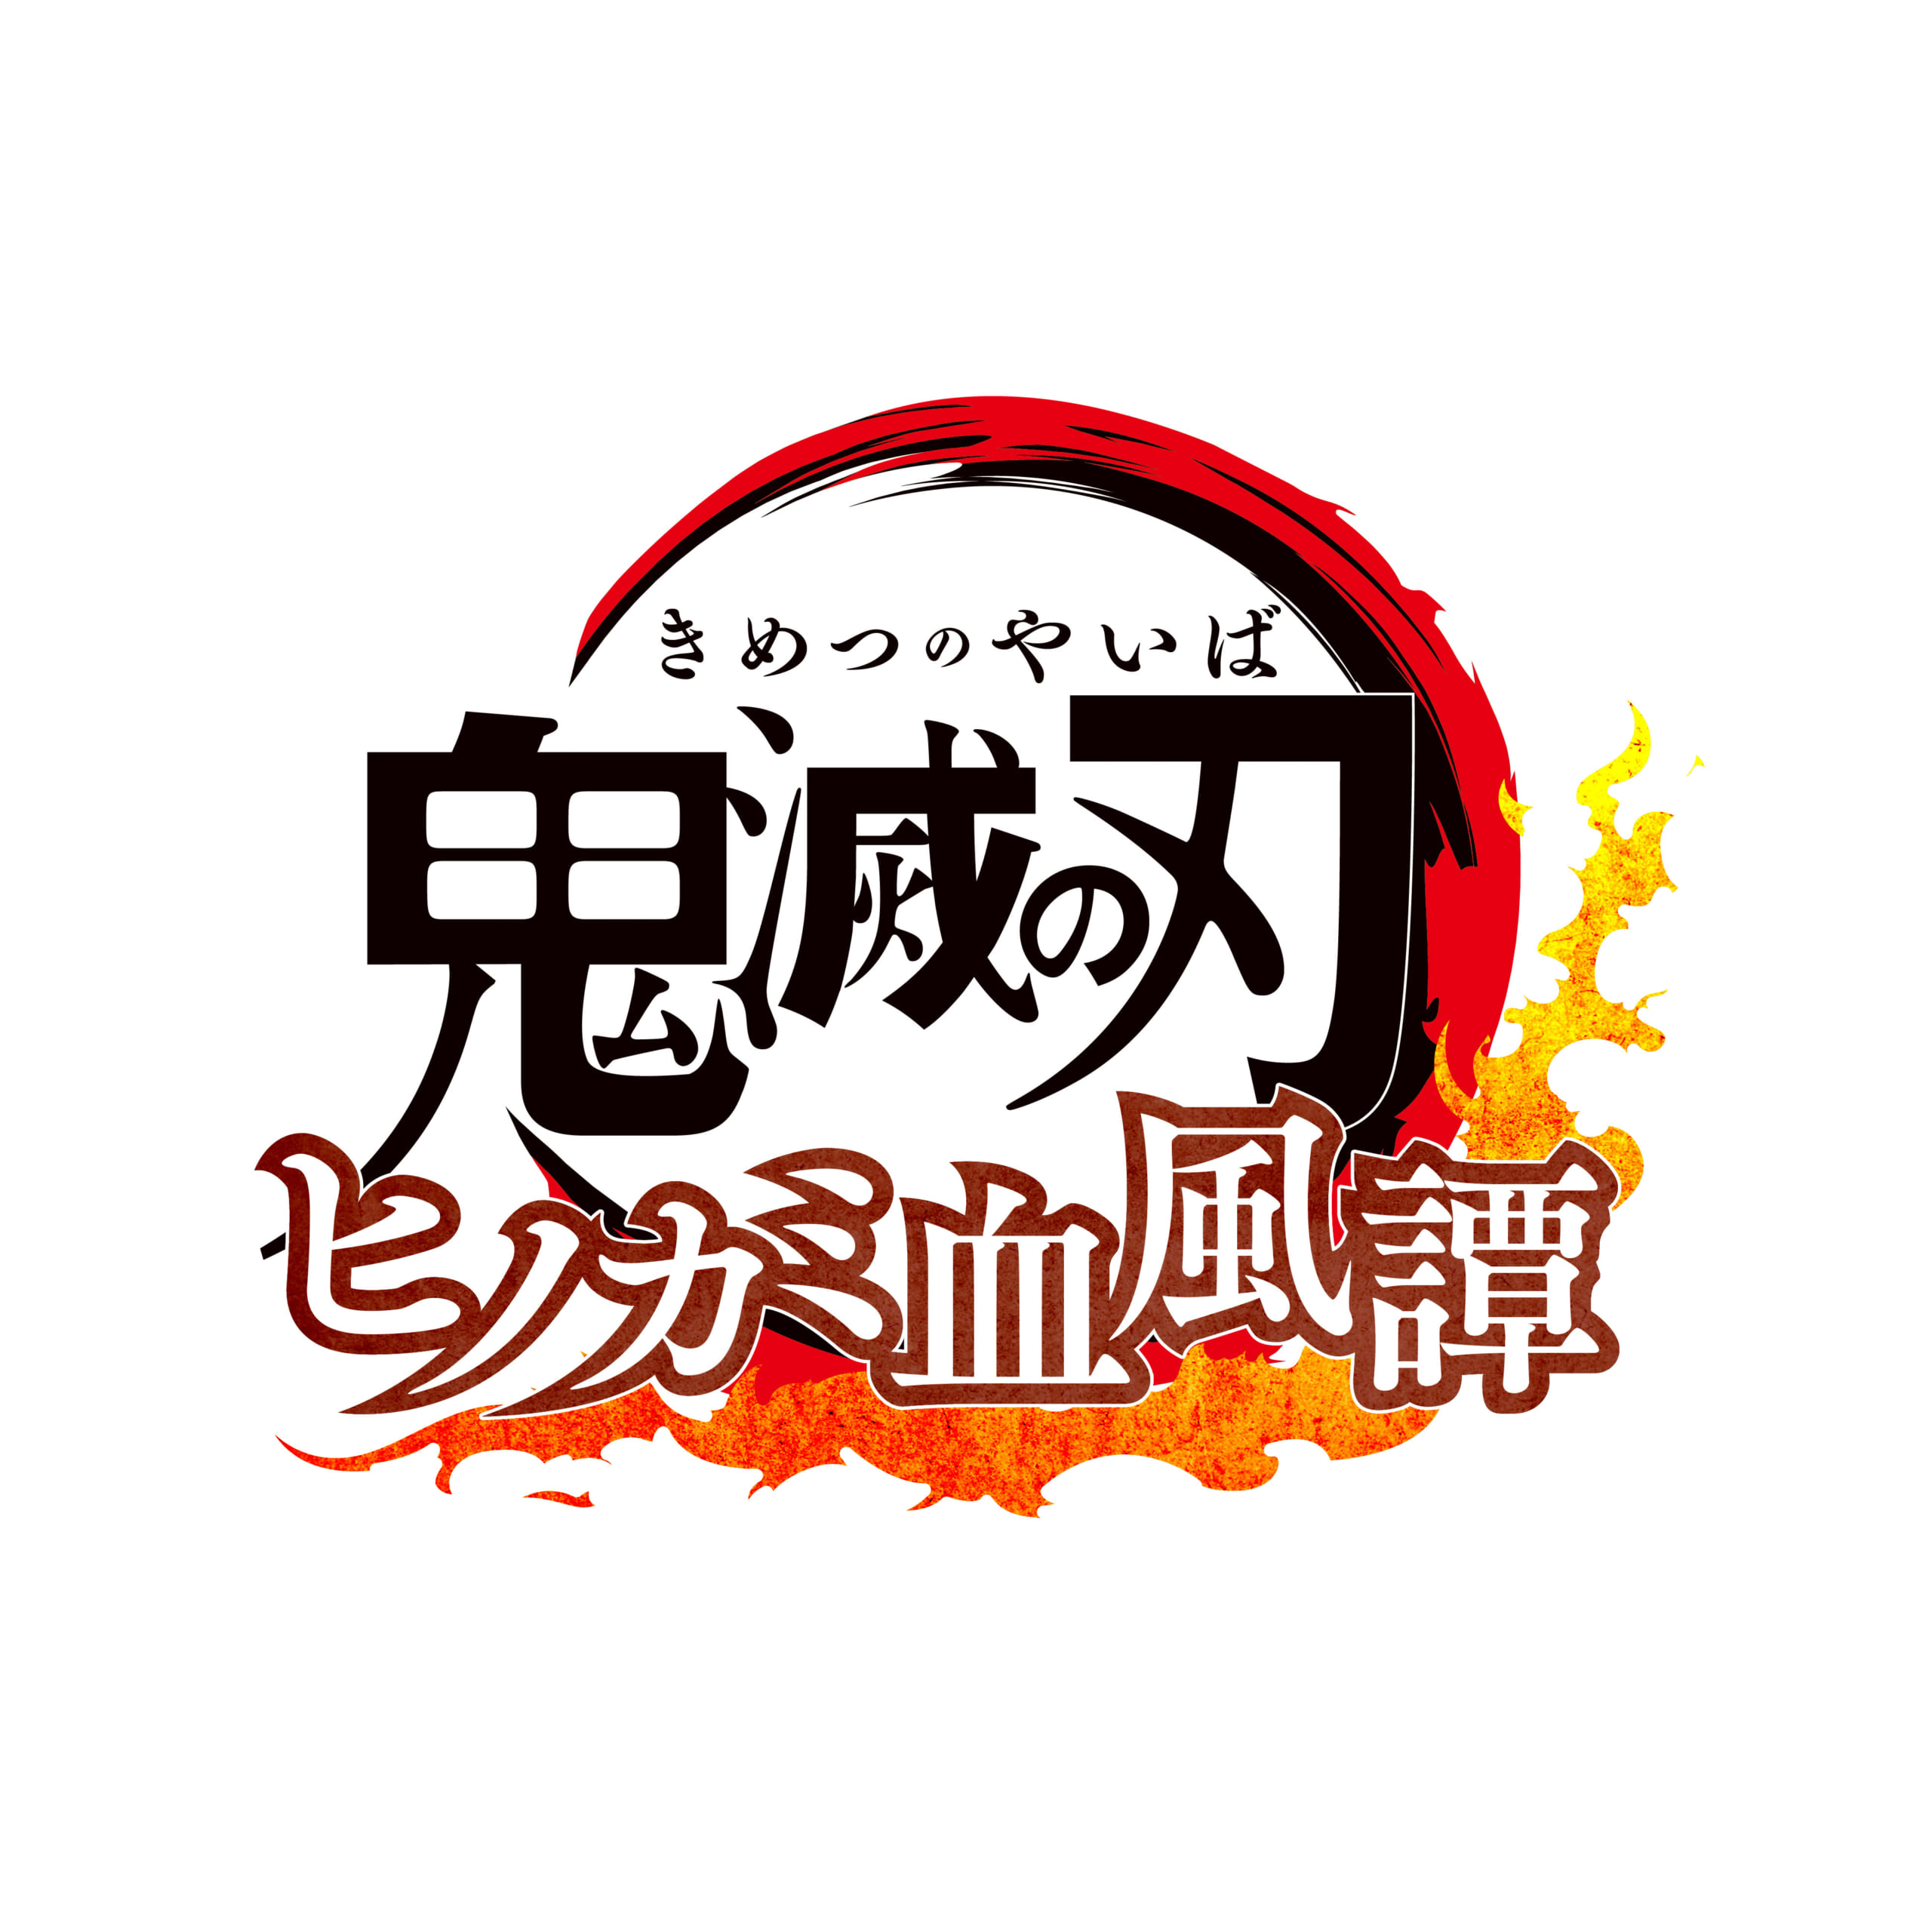 「鬼滅の刃 ヒノカミ血風譚」ロゴ